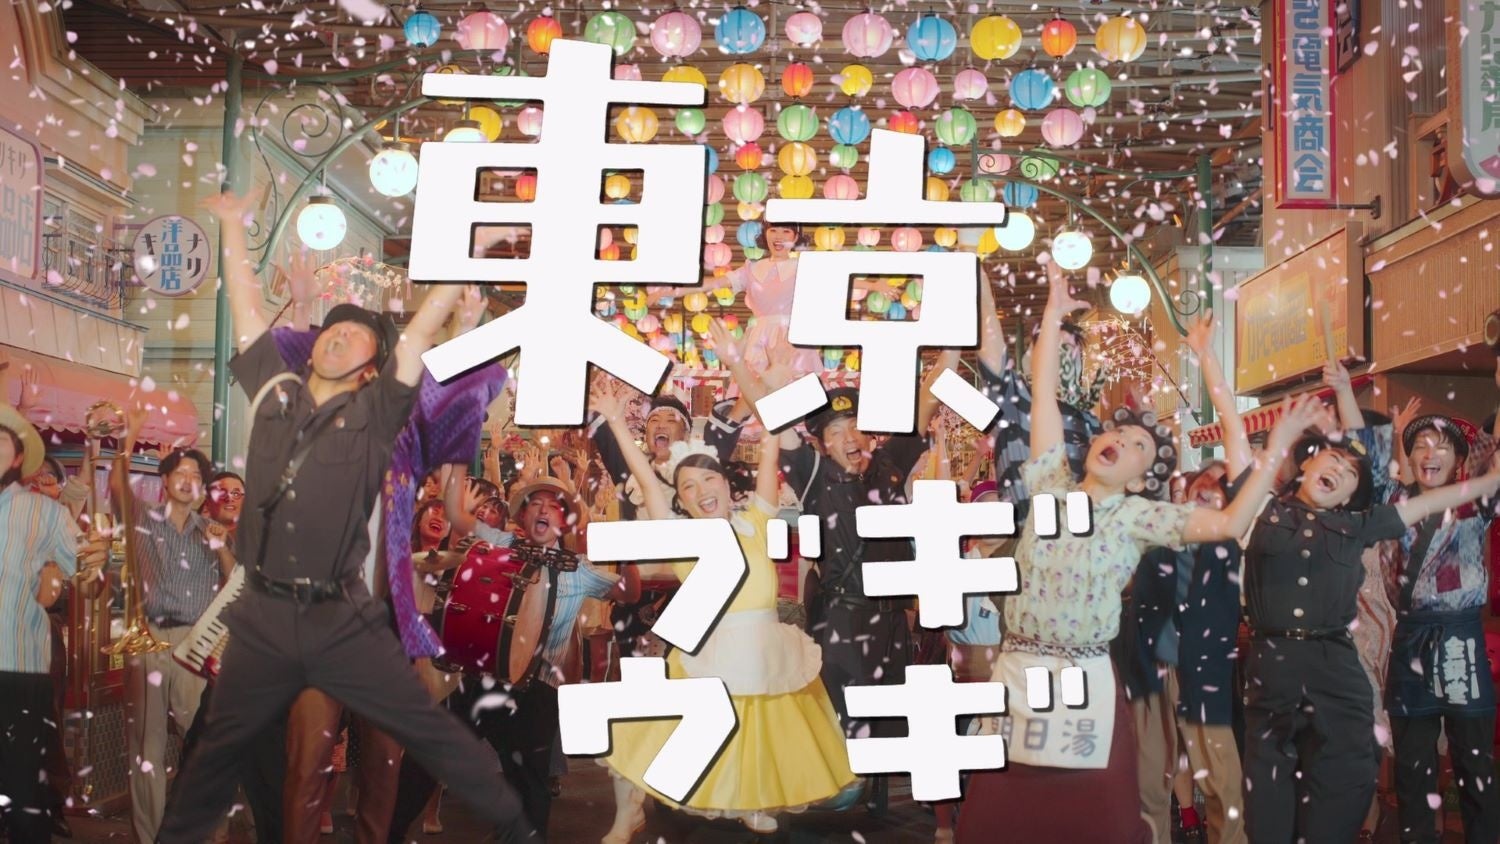 笠置シヅ子の代表曲をモダンにアップデート！『東京ブギウギ』 Re-Edit と Remix 本日から配信リリース！西武園ゆうえんちとコラボしたミュージック・ビデオも公開